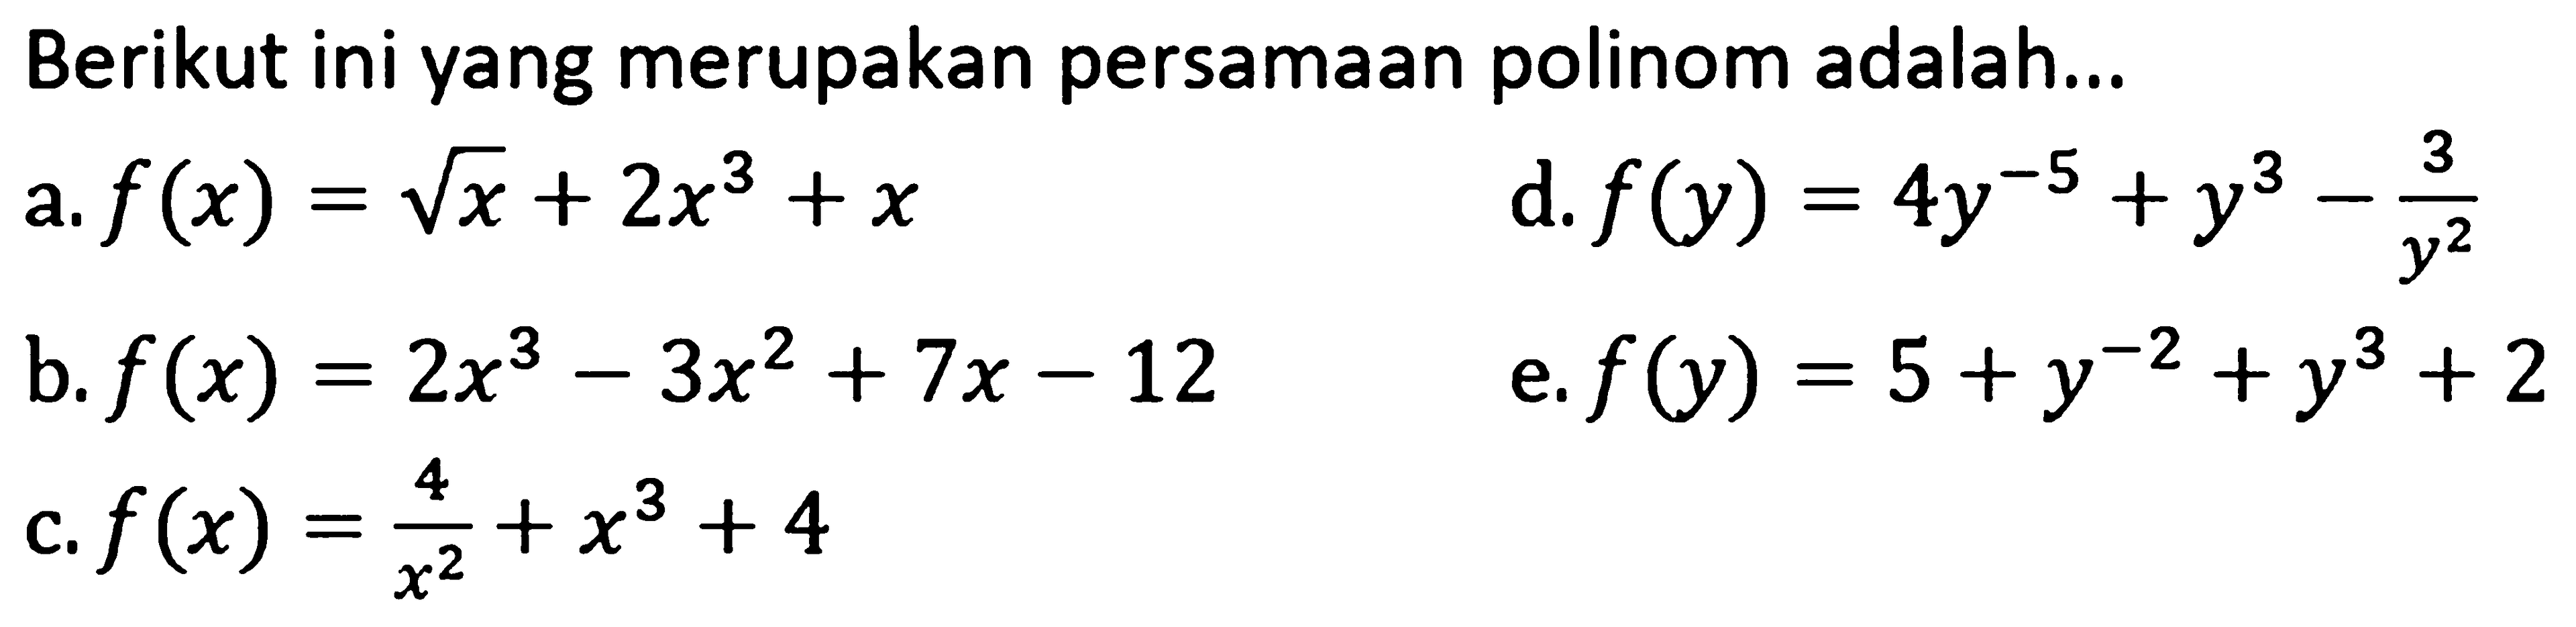 Berikut ini yang merupakan persamaan polinom adalah...